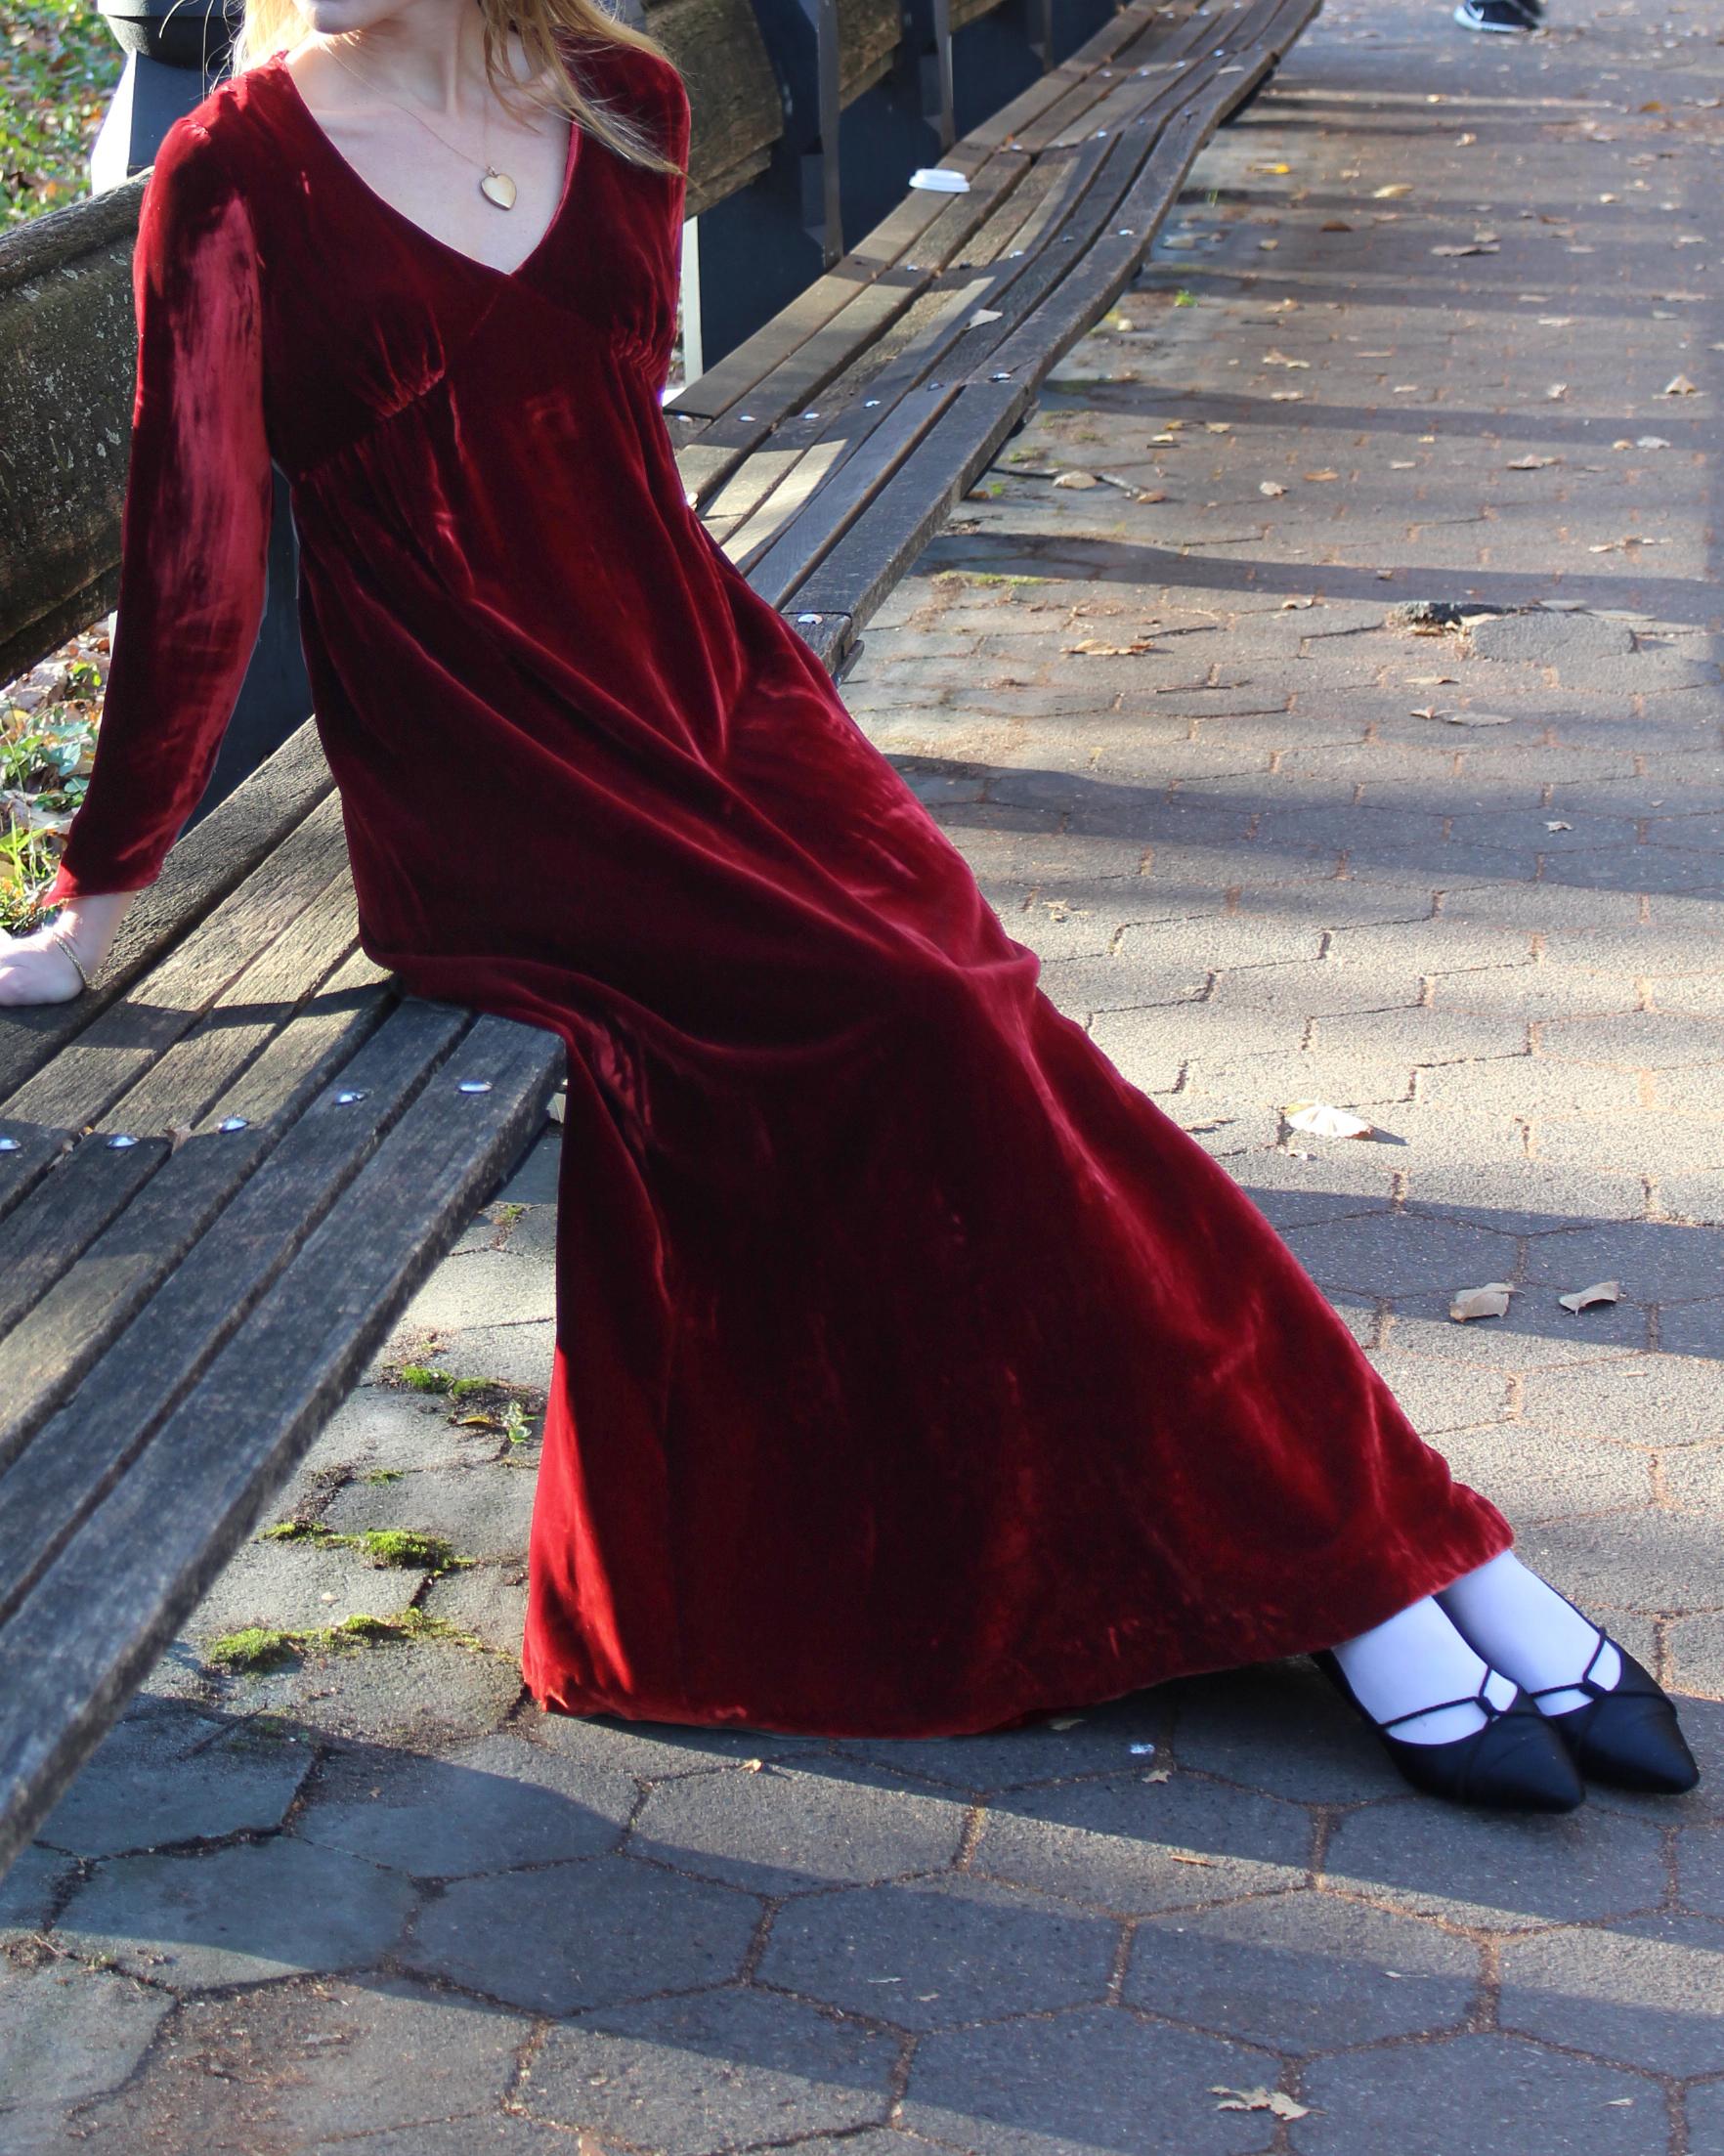 Dieses romantische Kleid aus rotem Samt wurde in den späten 1930er Jahren (möglicherweise Anfang der 1940er Jahre) maßgefertigt und ist ein absolutes Einzelstück. Der knallrote Samt in Maxilänge ist so reichhaltig. Es hat eine geraffte Empire-Taille